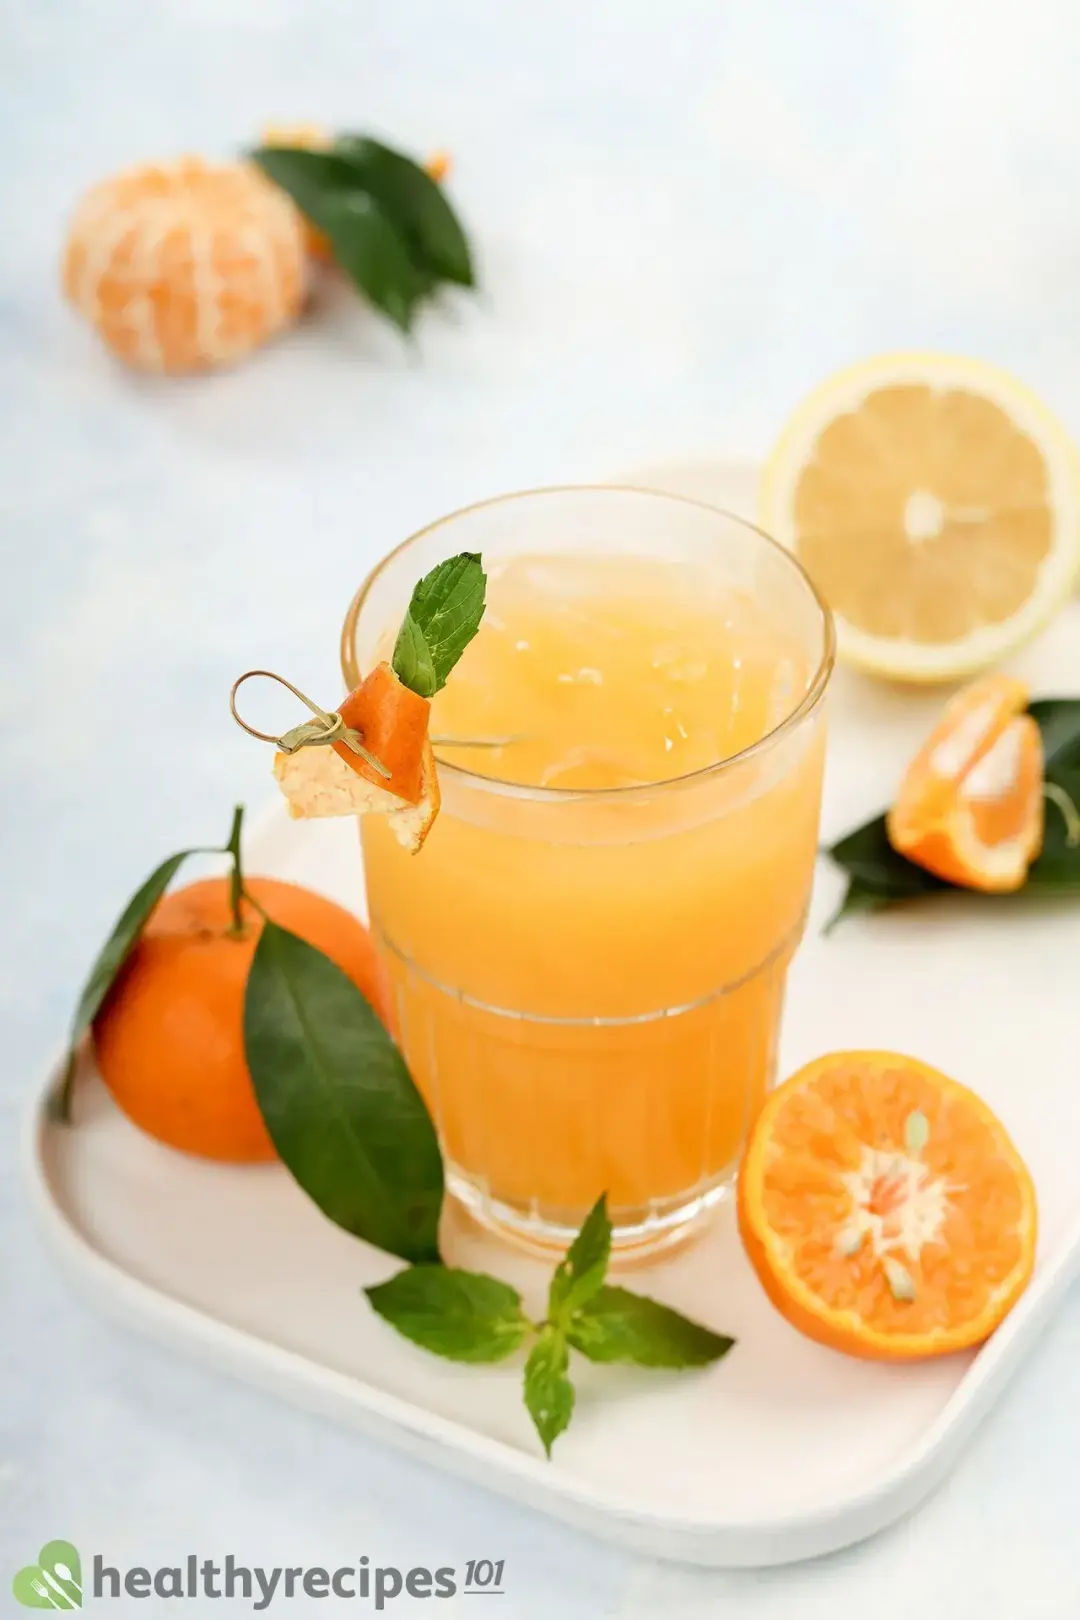 Benefits of Tangerine Juice